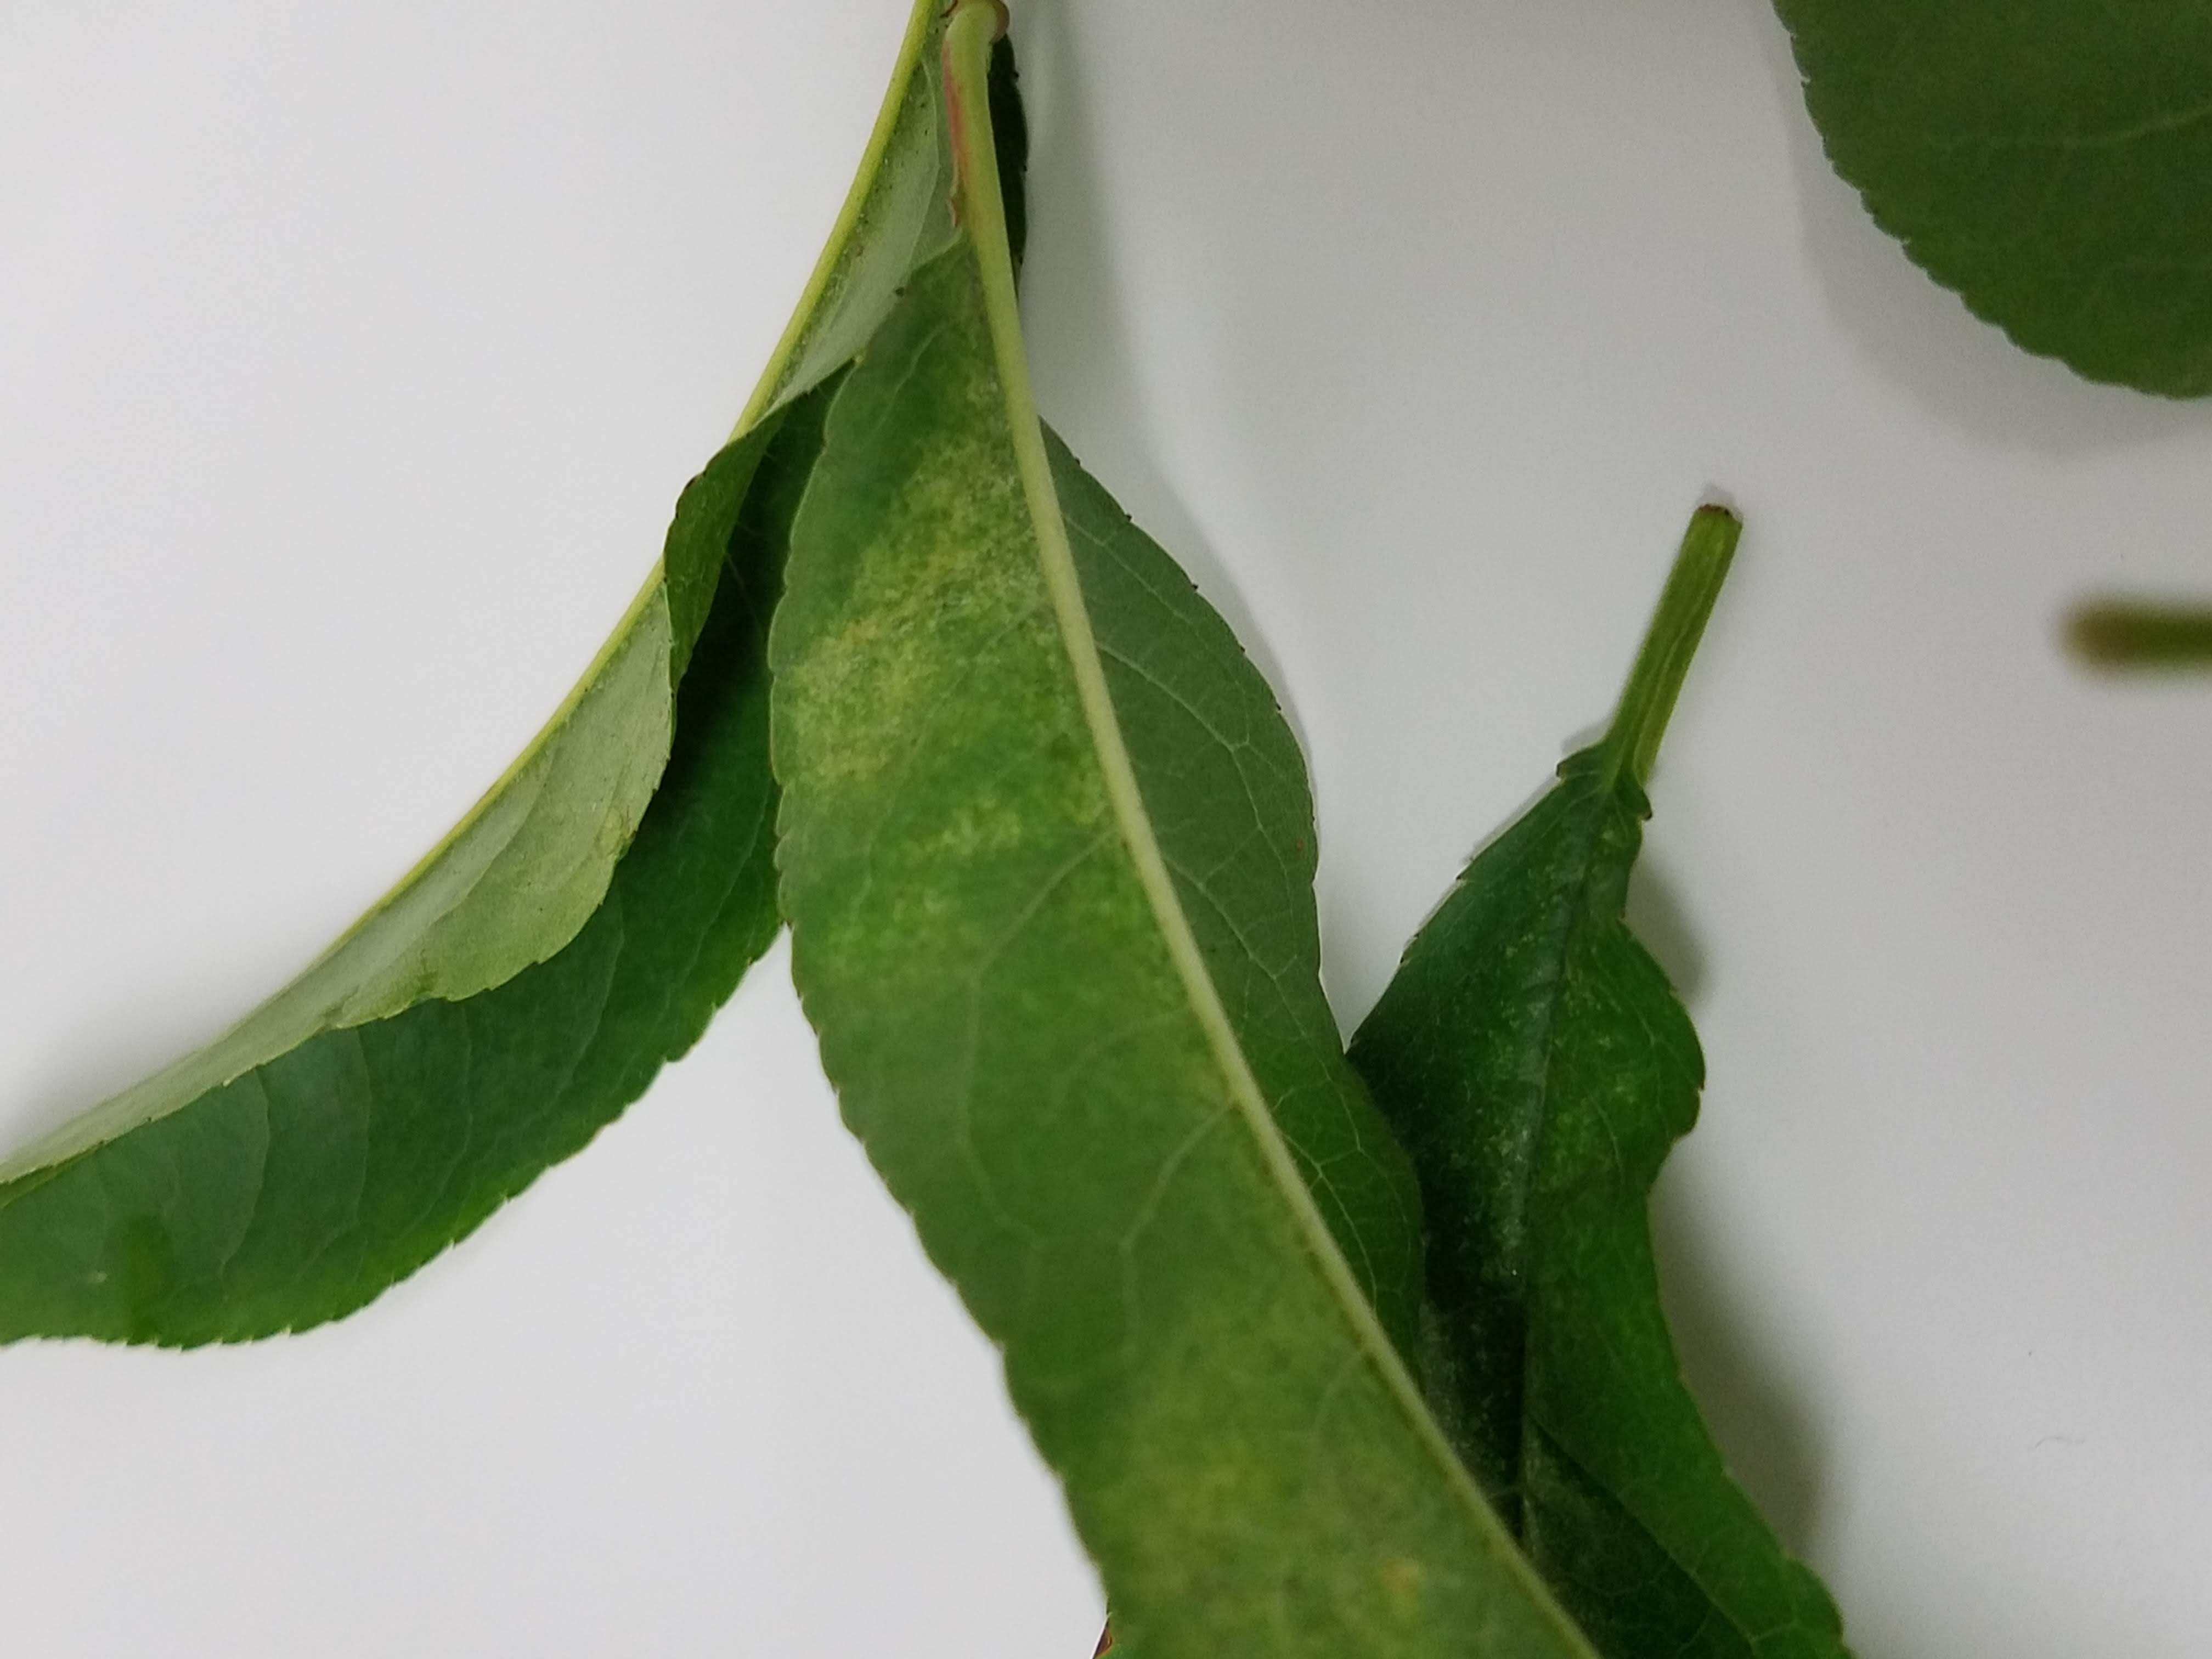 mite damage on peach leaves